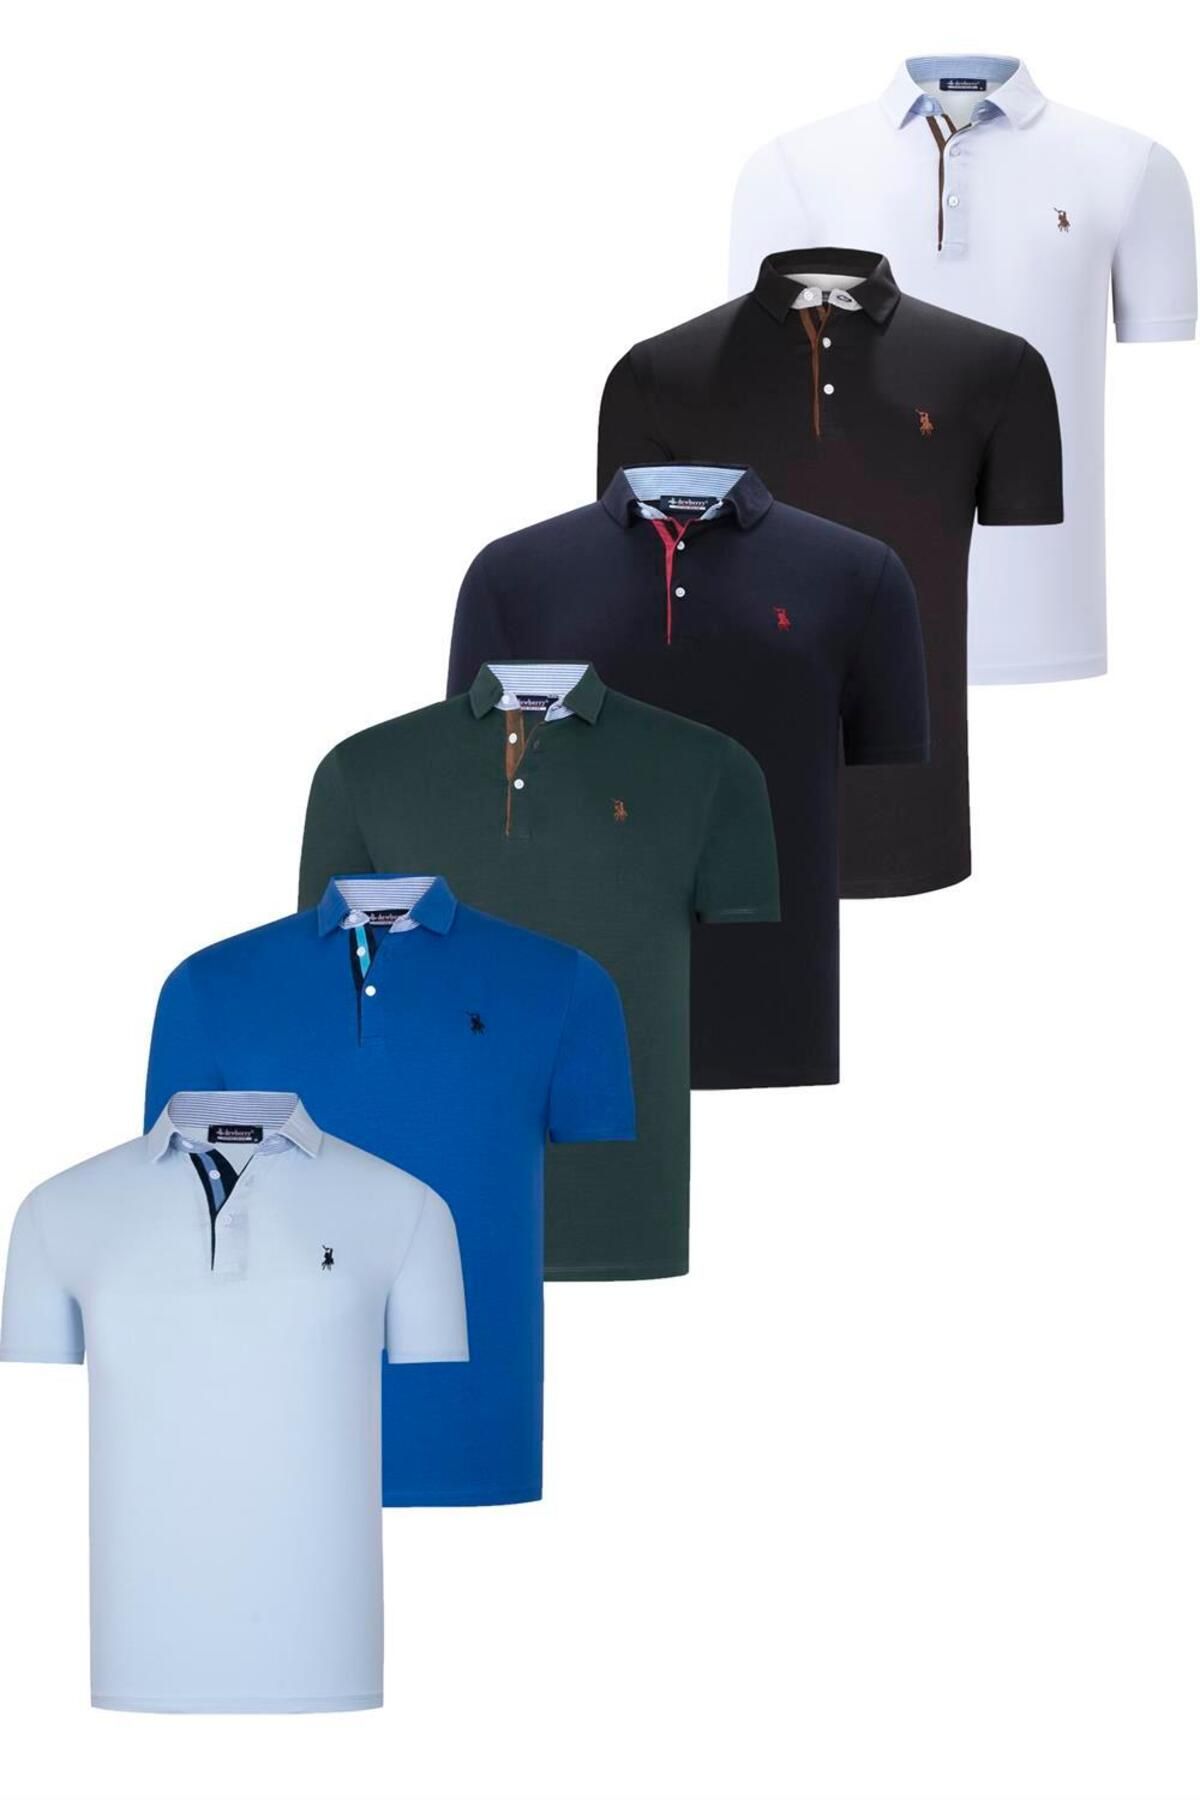 Dewberry ست شش تایی تی شرت مردانه T8582 DEWBERRY-مشکی-سفید-آبی تیره-سبز-ببیبی ساکس